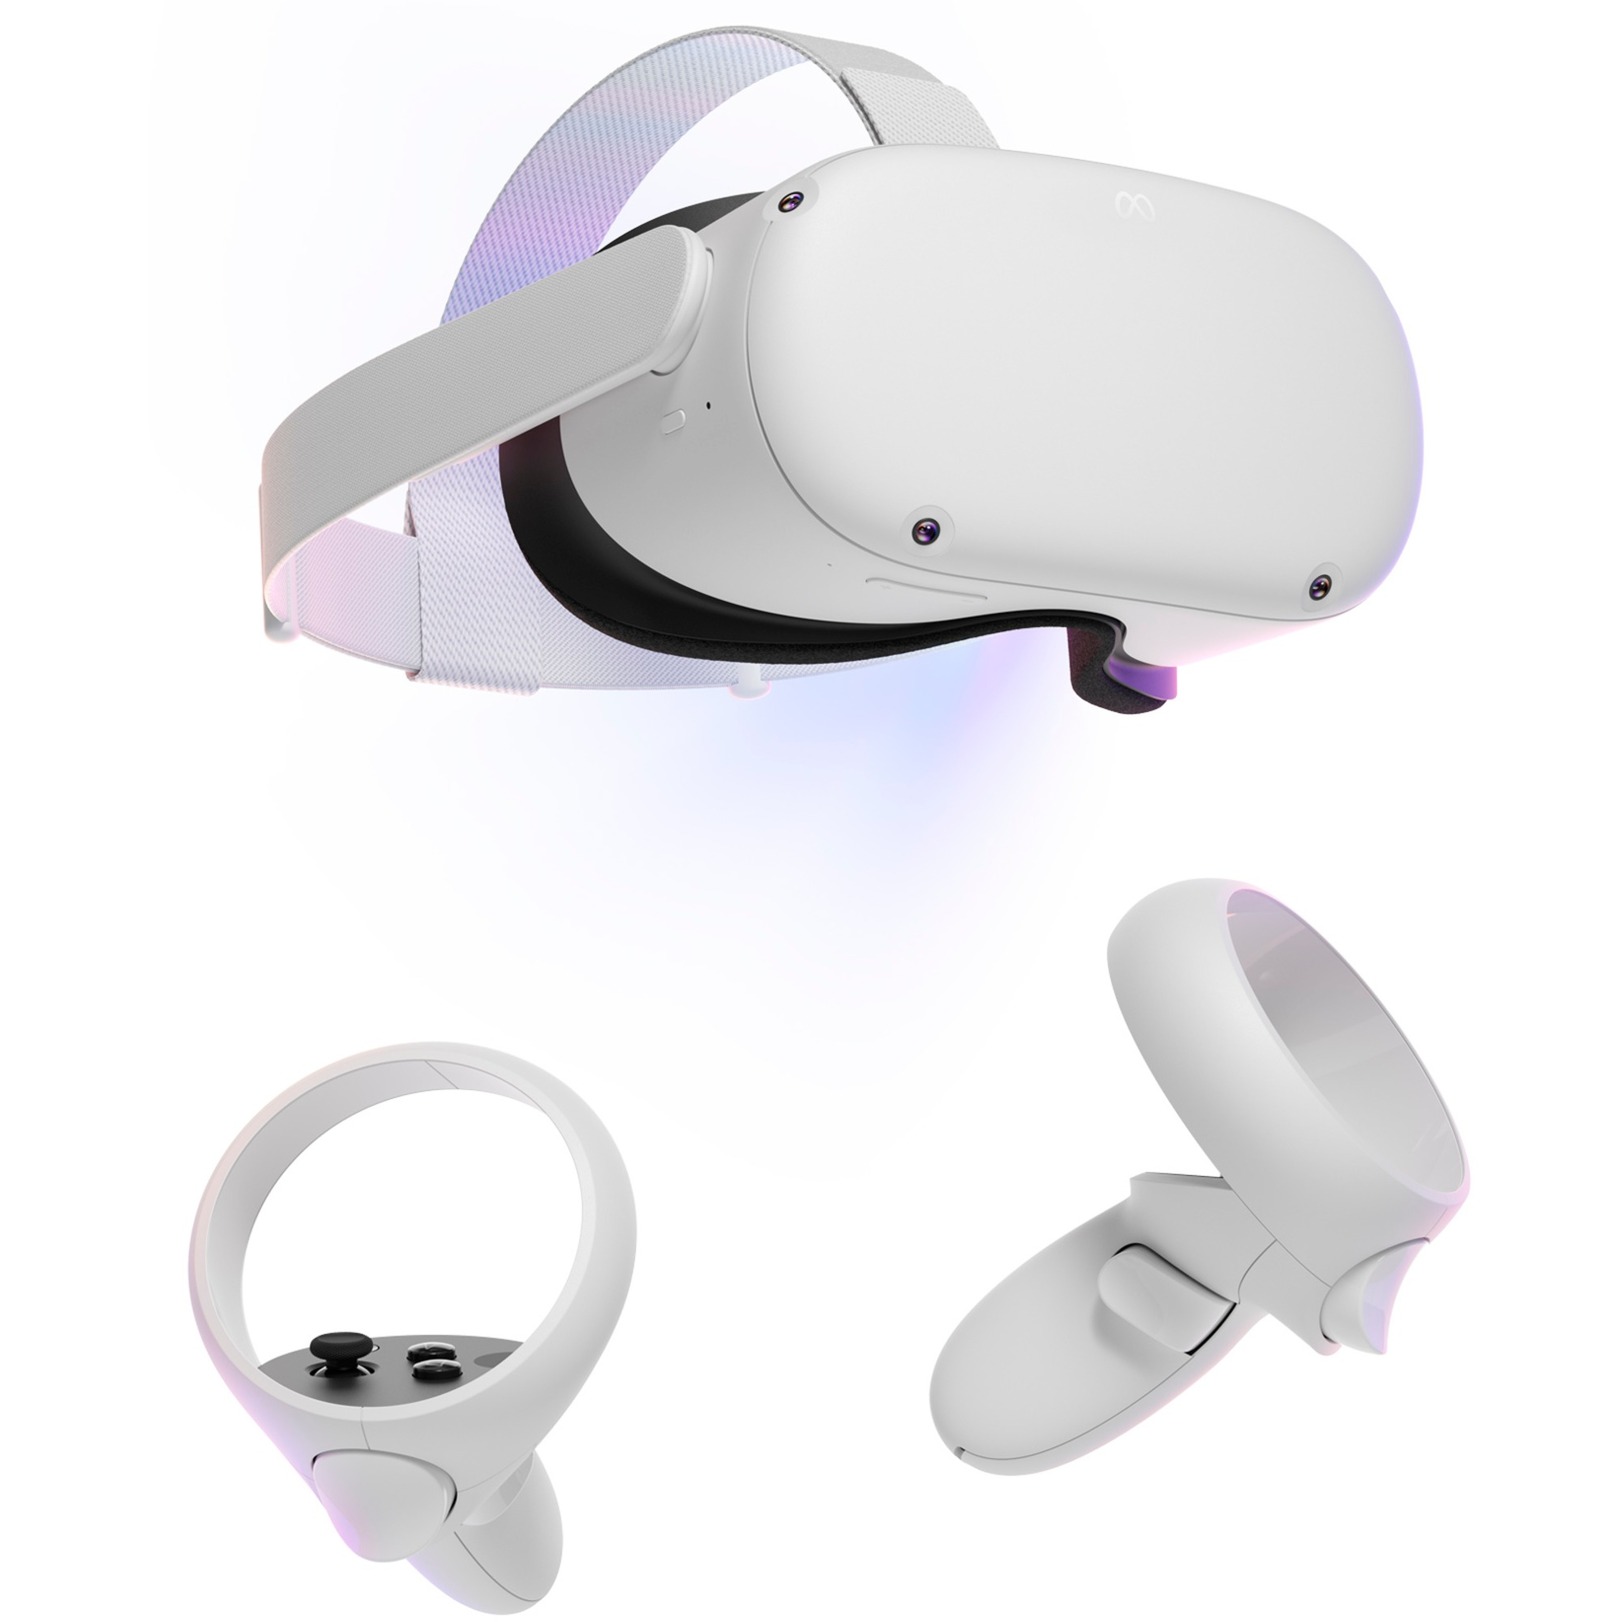 Image of Alternate - Quest 2 128 GB, VR-Brille online einkaufen bei Alternate